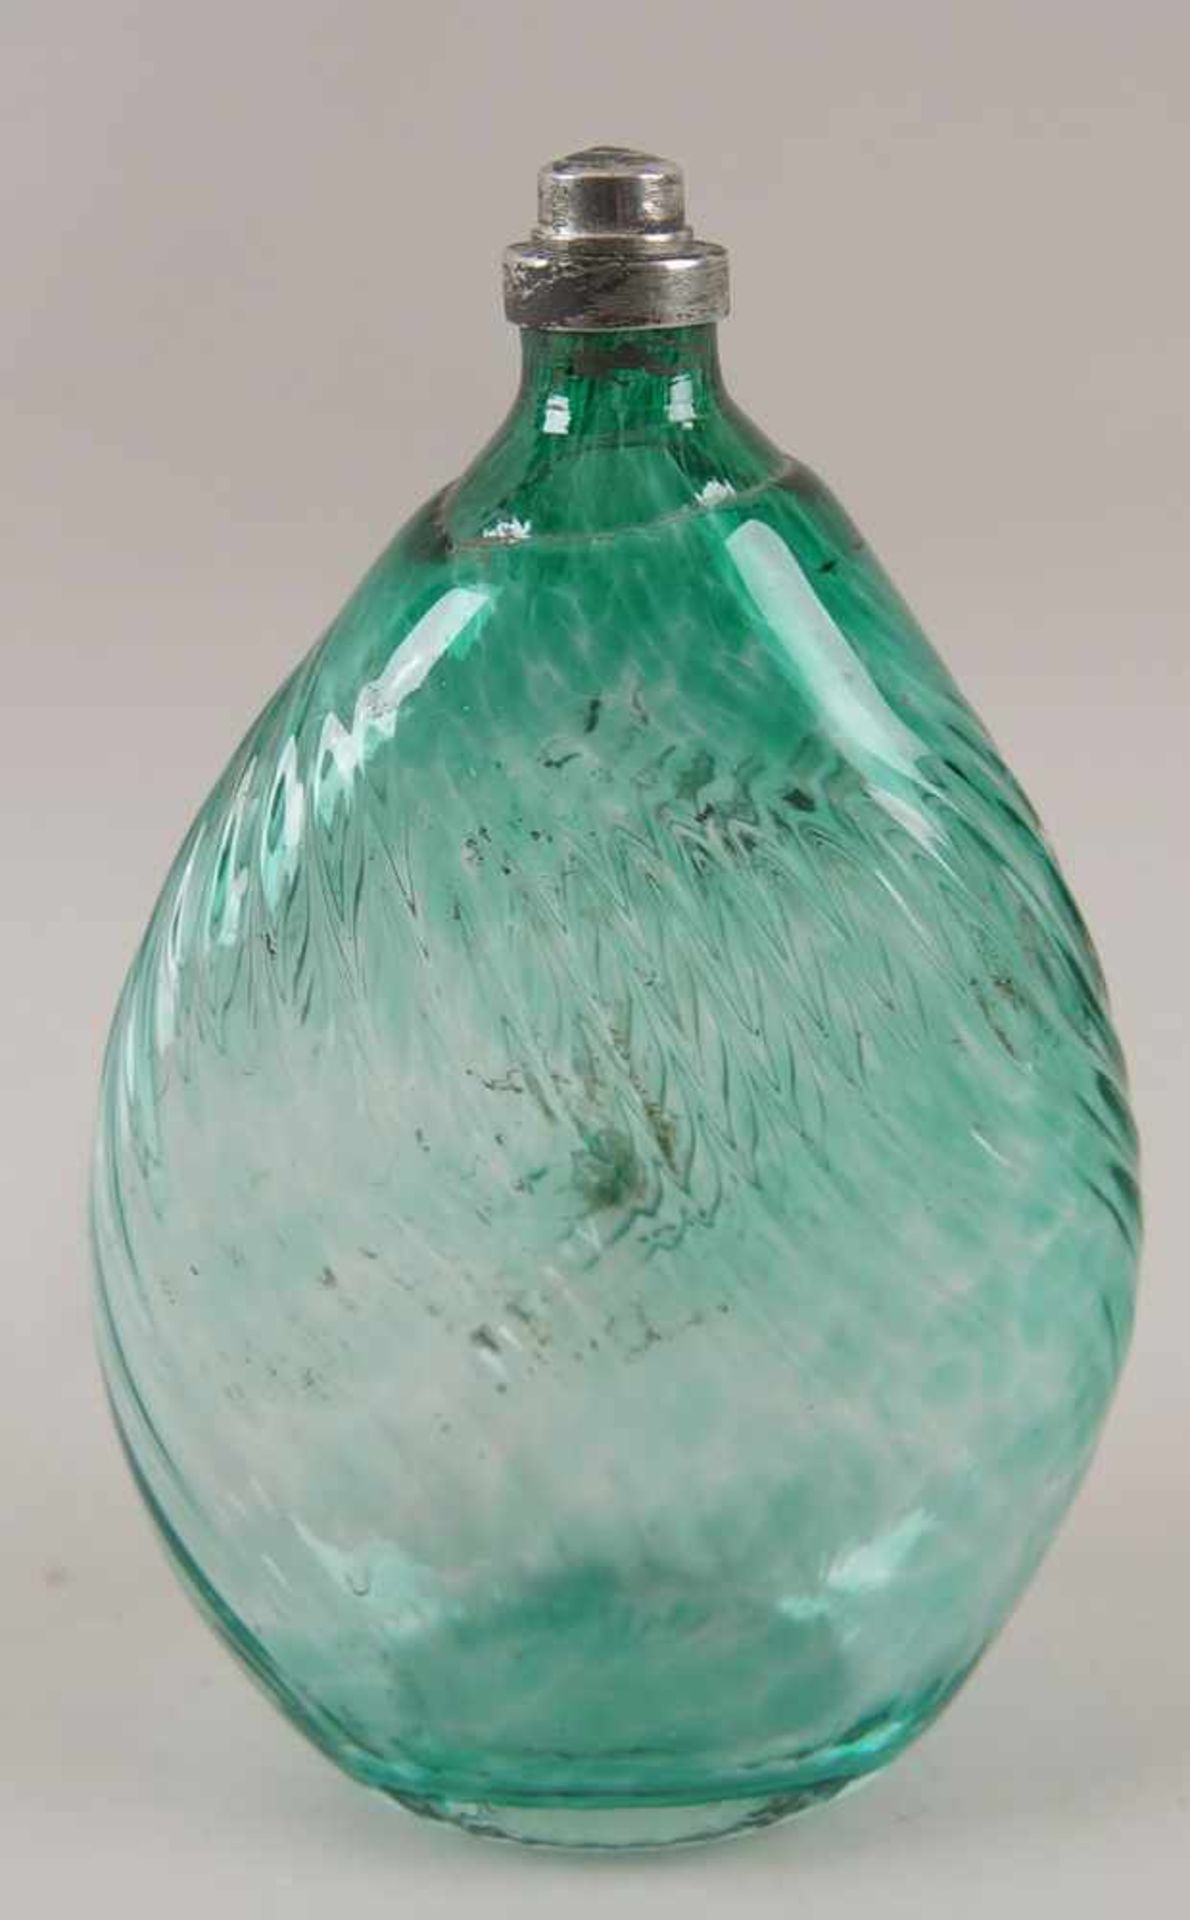 Gramsacher Nabelflasche, Tirol, ~ 1900, hellgrünes Glas, H 23,5cm - Bild 3 aus 6